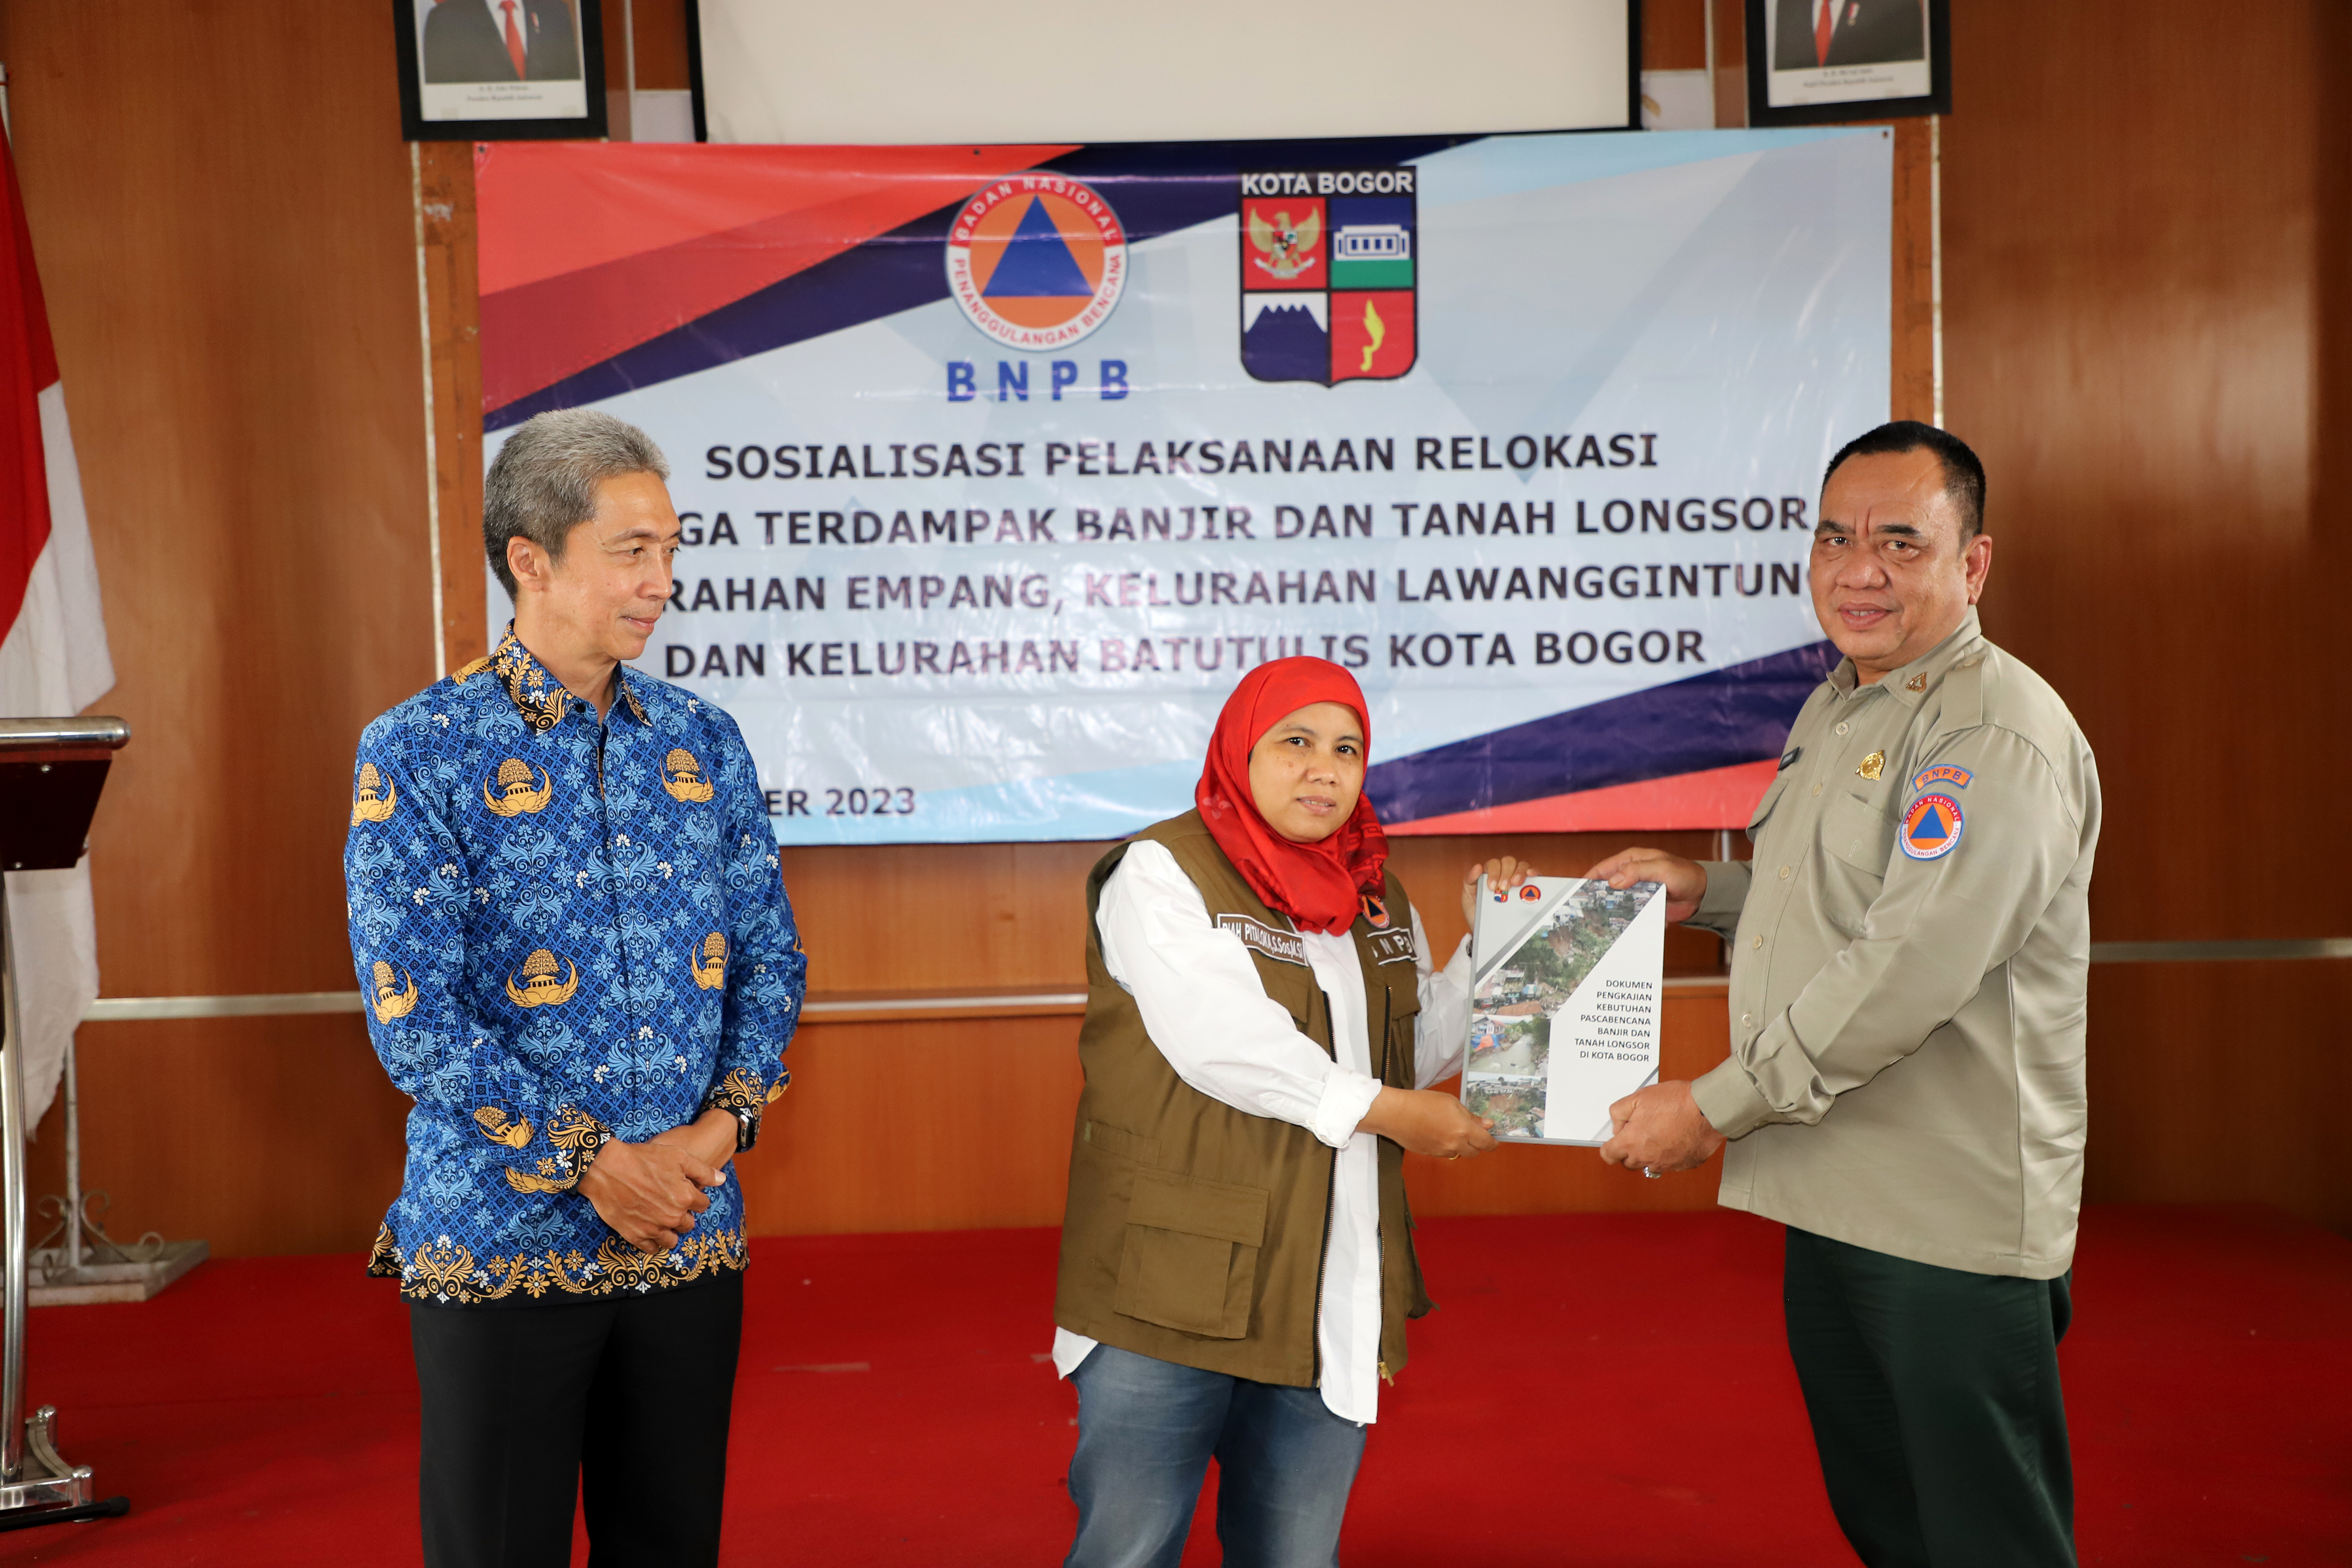 Pemerintah daerah kota Bogor bersama Wakil Ketua Komisi VIII DPR RI menyerahkan dokumen pengkajian kebutuhan pascabencana Banjir dan Tanah Longsor di Kota Bogor, Jawa Barat.